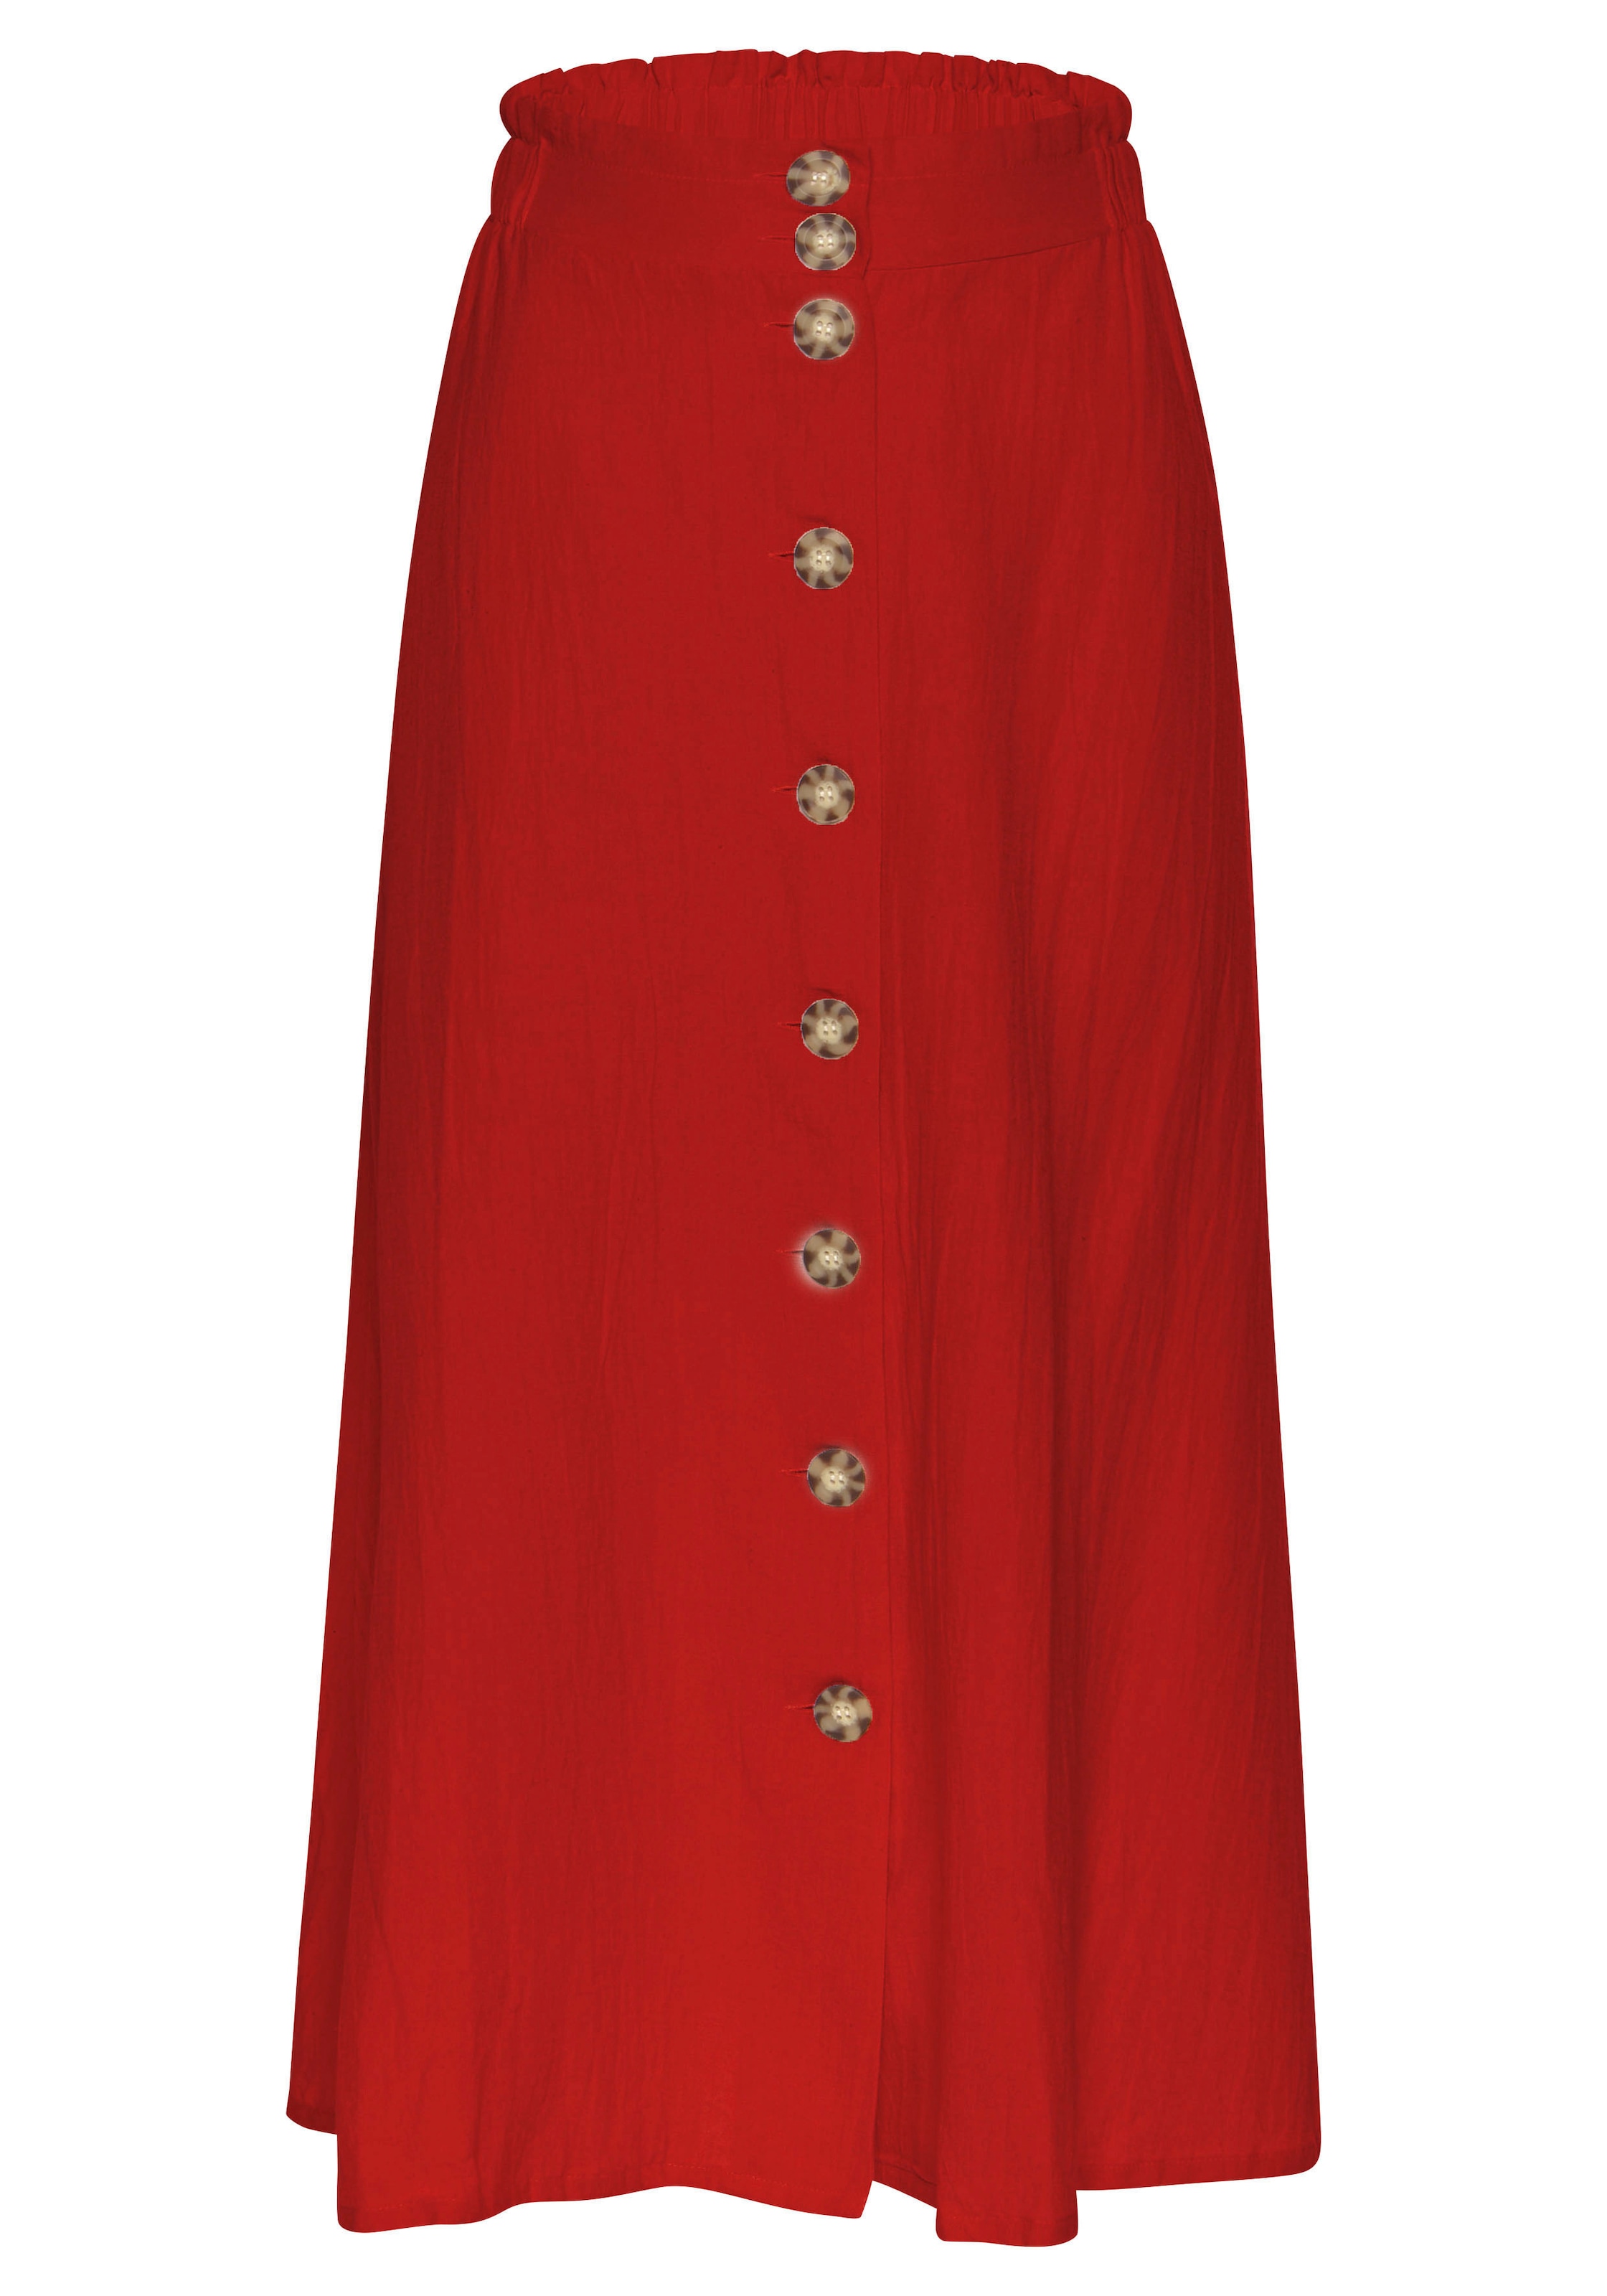 Bestellen Sie sommerliche Röcke online bei LASCANA